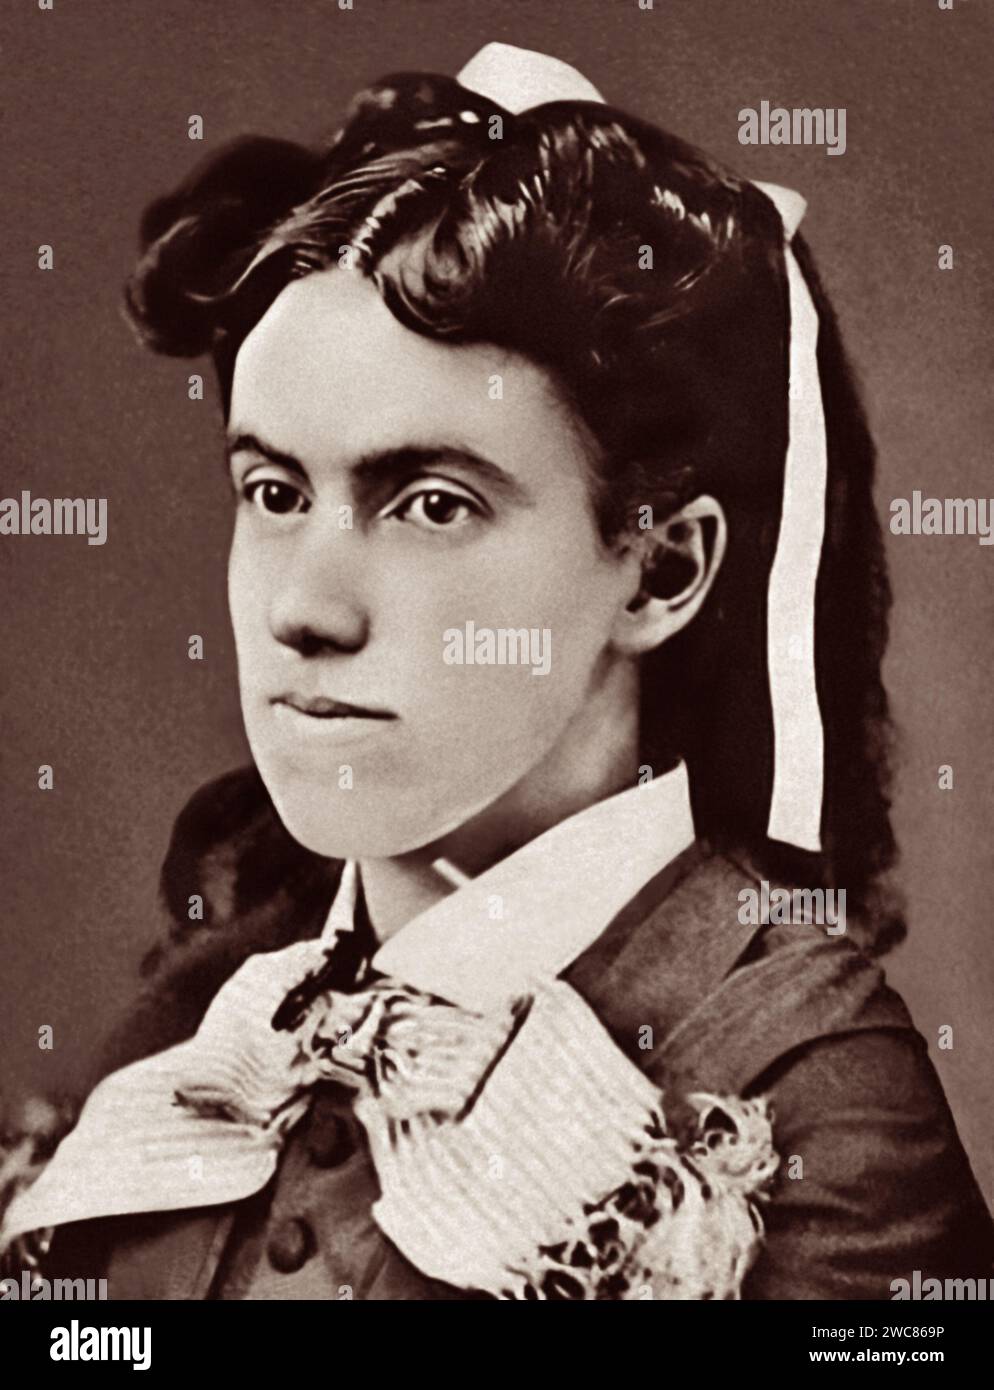 Charlotte Digges (Lottie) Moon (1840-1912) è stata una missionaria battista americana che ha trascorso quasi 40 anni in Cina impegnata in missioni cristiane per portare il Vangelo di Cristo al popolo cinese. Foto Stock